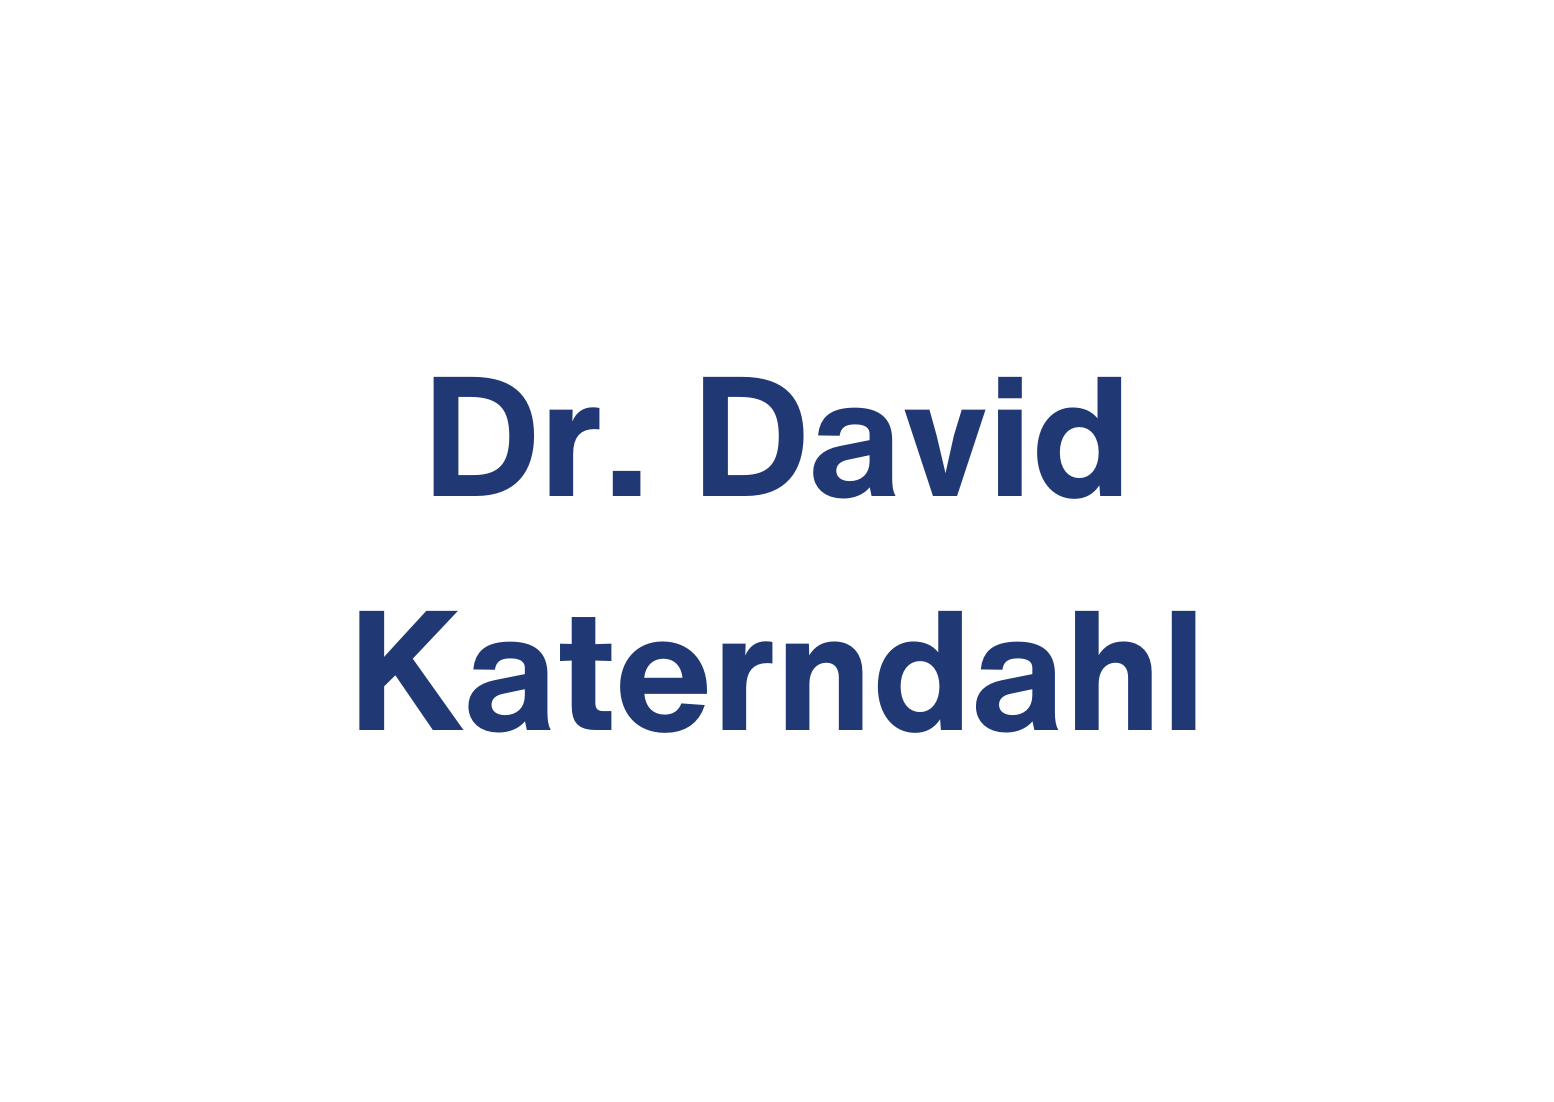 Dr. David Katerndahl